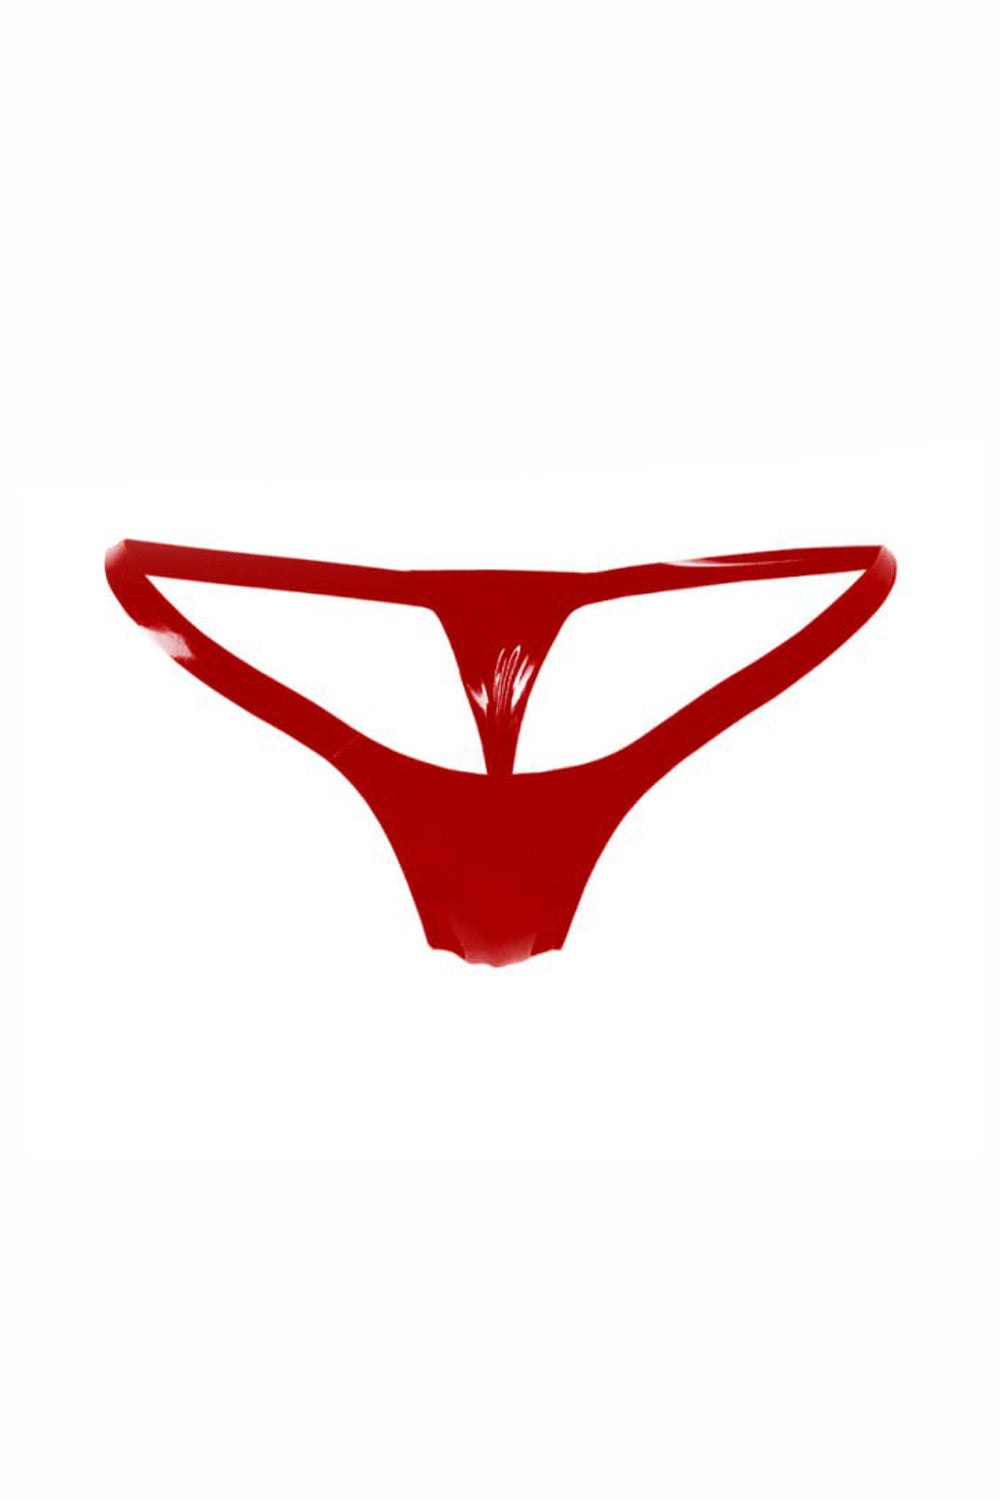 Latex Micro Bikini. Red